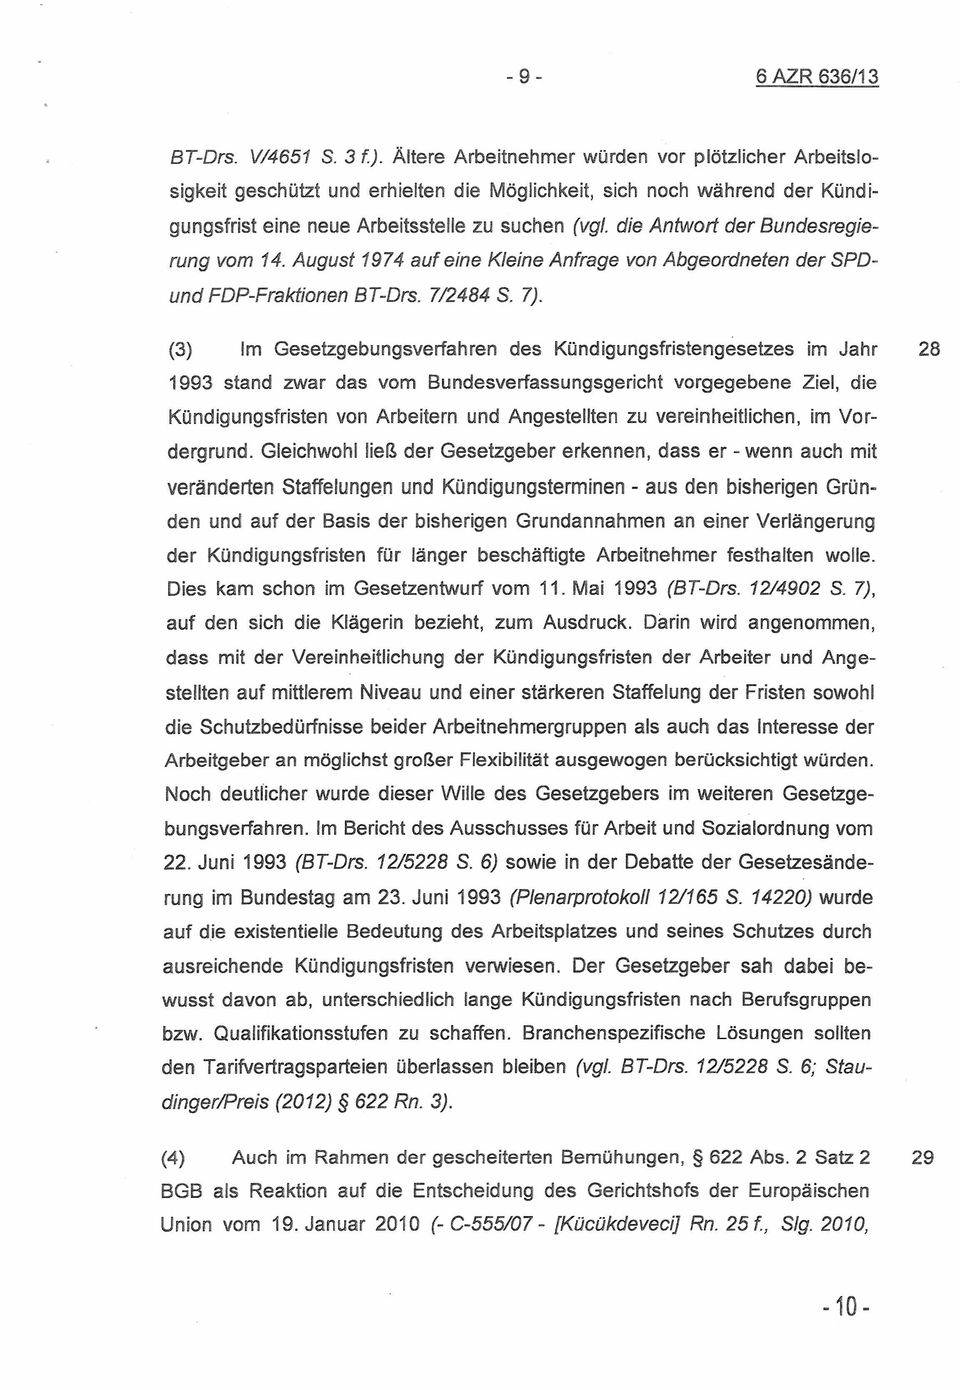 die Antwort der Bundesregierung vom 14. August 1974 auf eine Kleine Anfrage von Abgeordneten der SPDund FDP-Fraktionen BT-Drs. 7/2484 S. 7).